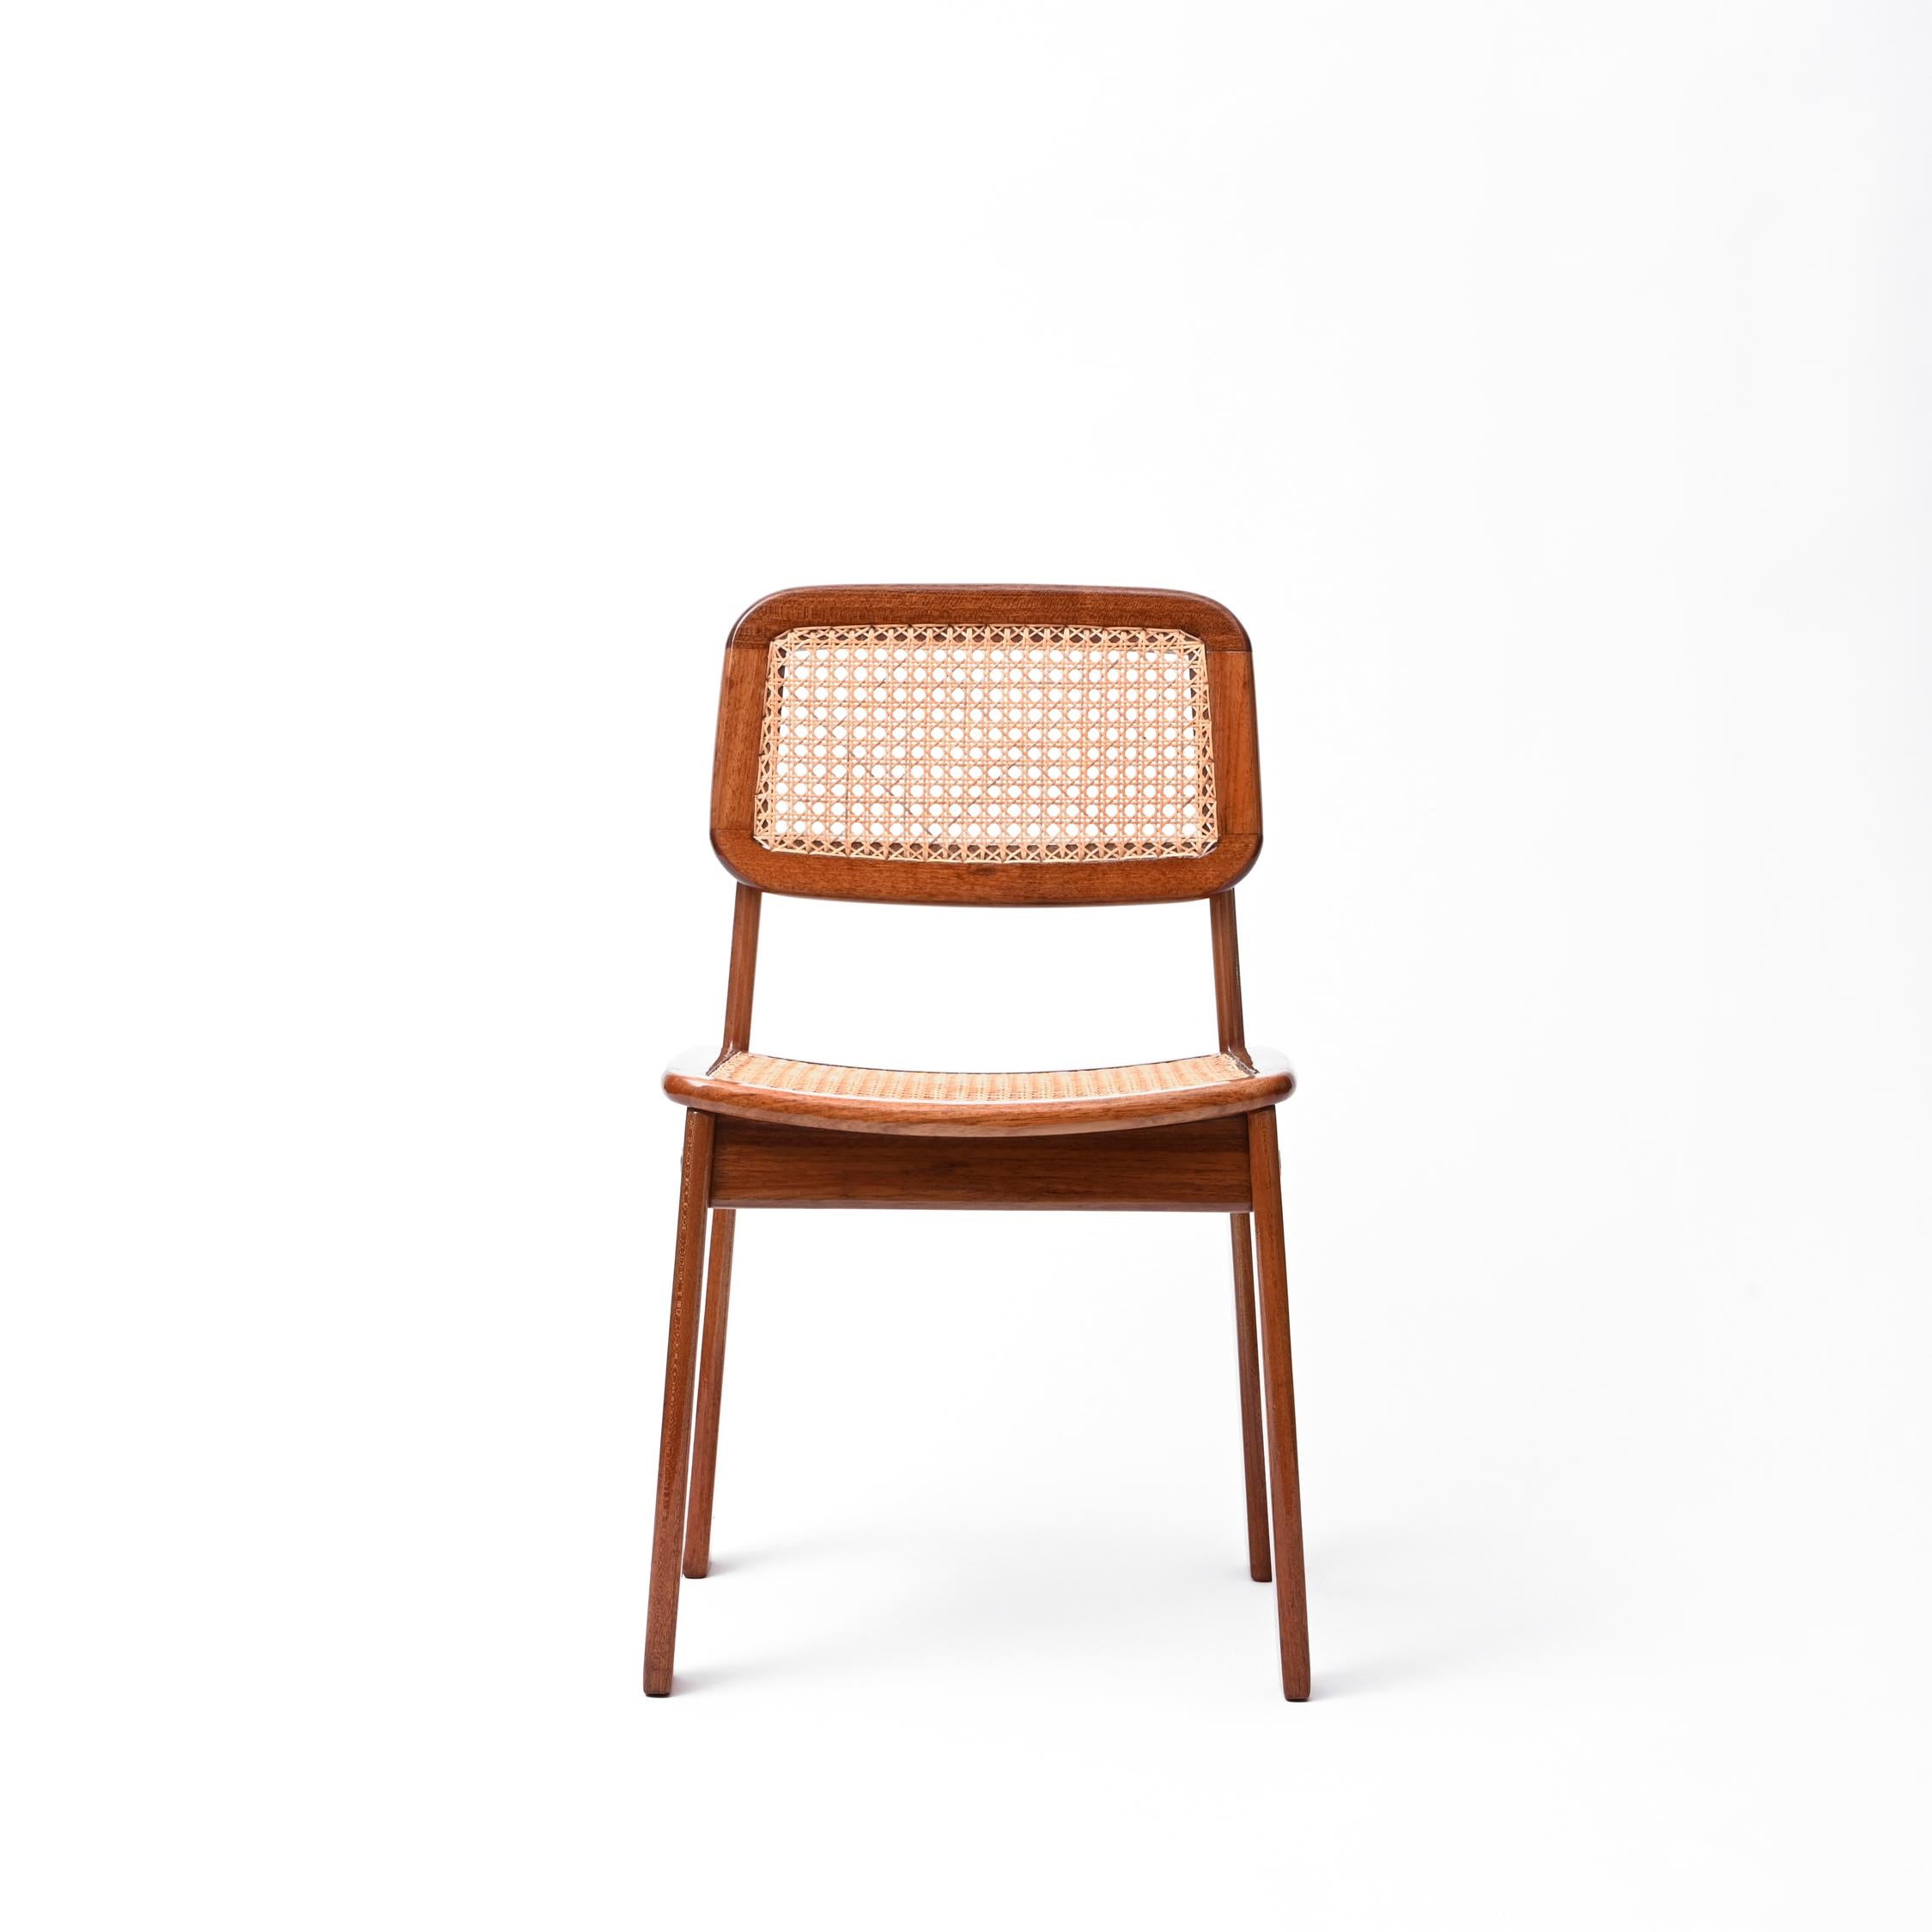 
L'ensemble de 6 chaises de Geraldo de Barros représente le summum de l'innovation artistique et de l'élégance fonctionnelle, reflétant l'esprit visionnaire de l'un des artistes brésiliens les plus influents du XXe siècle. Fabriquées sous l'égide de